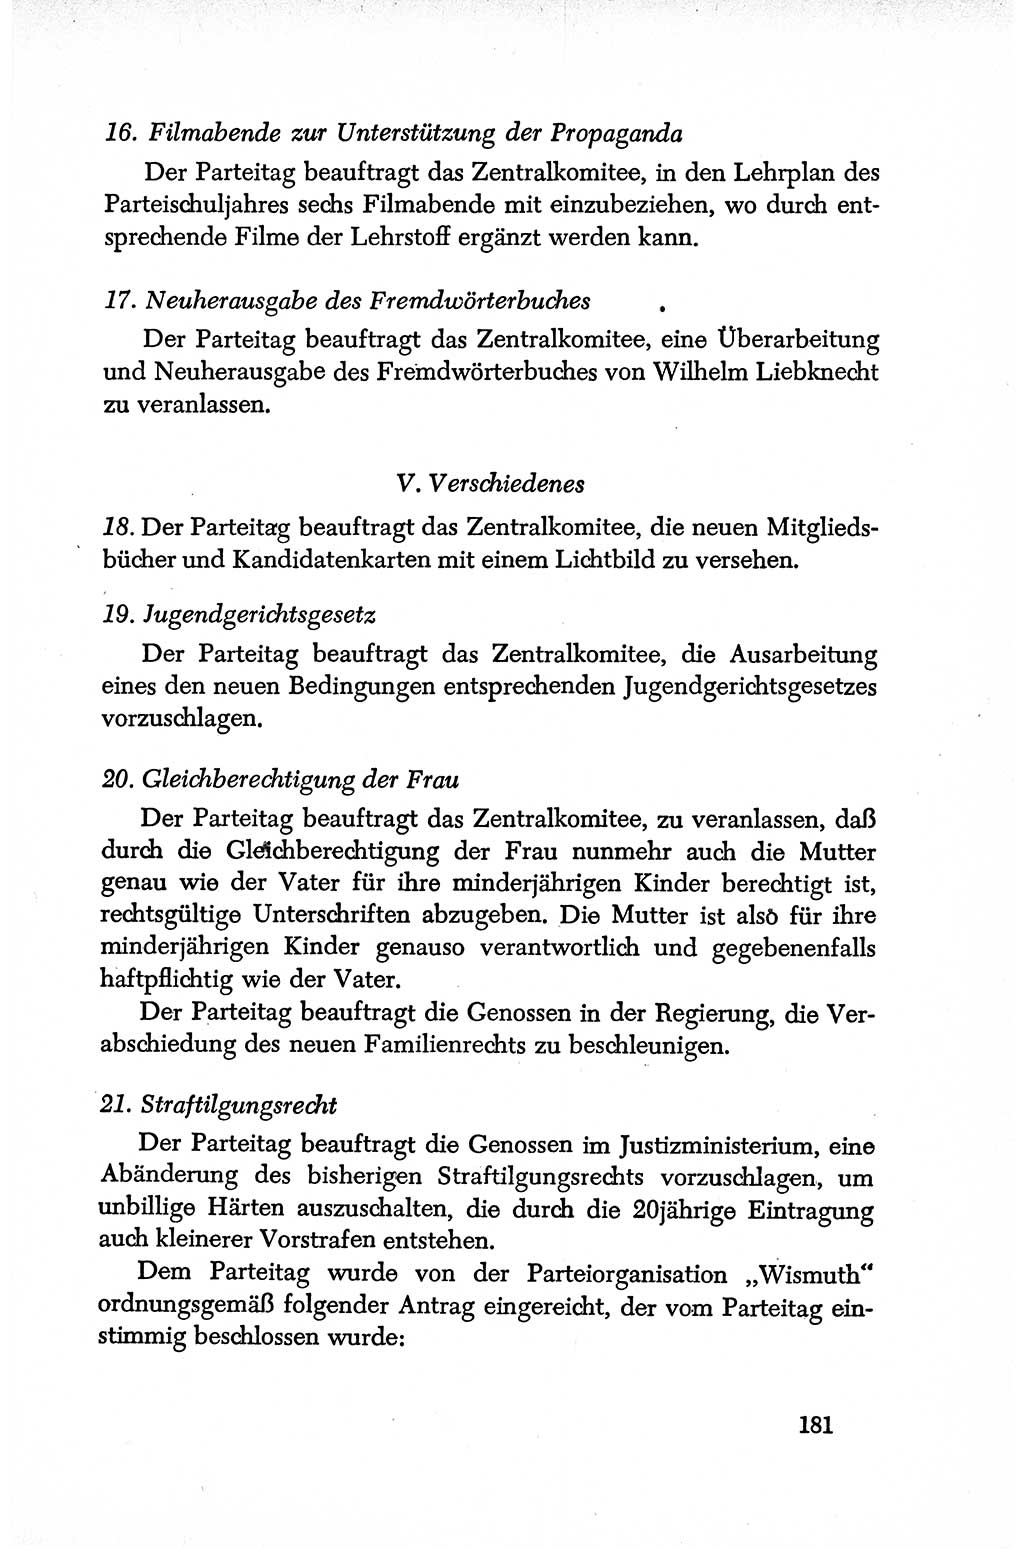 Dokumente der Sozialistischen Einheitspartei Deutschlands (SED) [Deutsche Demokratische Republik (DDR)] 1950-1952, Seite 181 (Dok. SED DDR 1950-1952, S. 181)